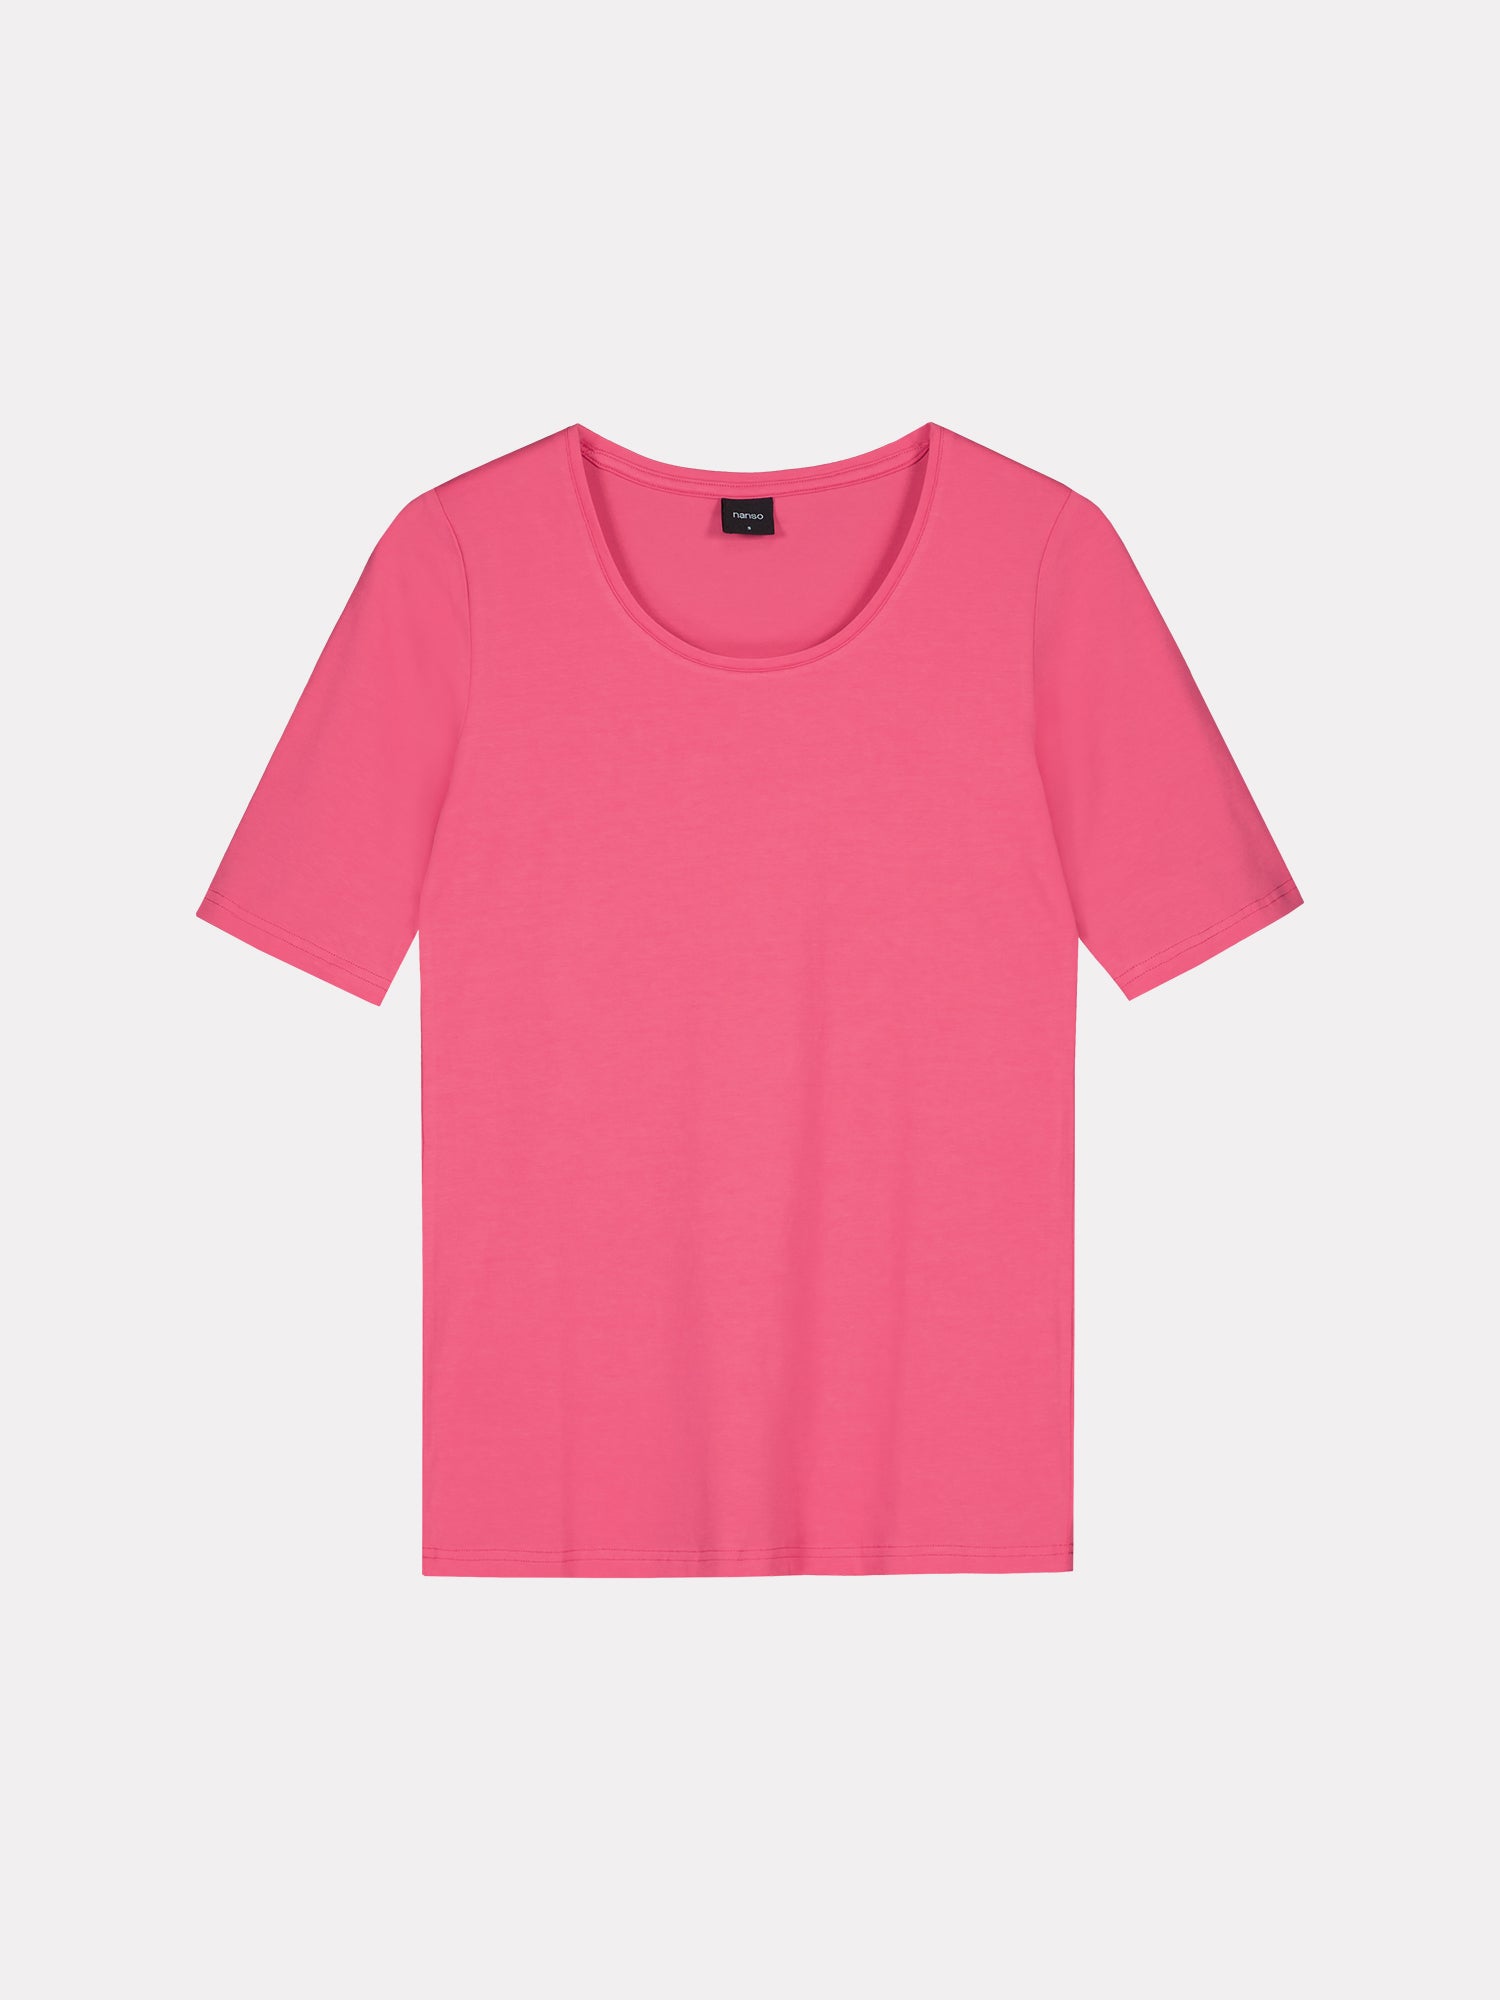 Nanson naisten klassisen tyylikäs pinkki Basic t-paita pyöreällä pääntiellä. 